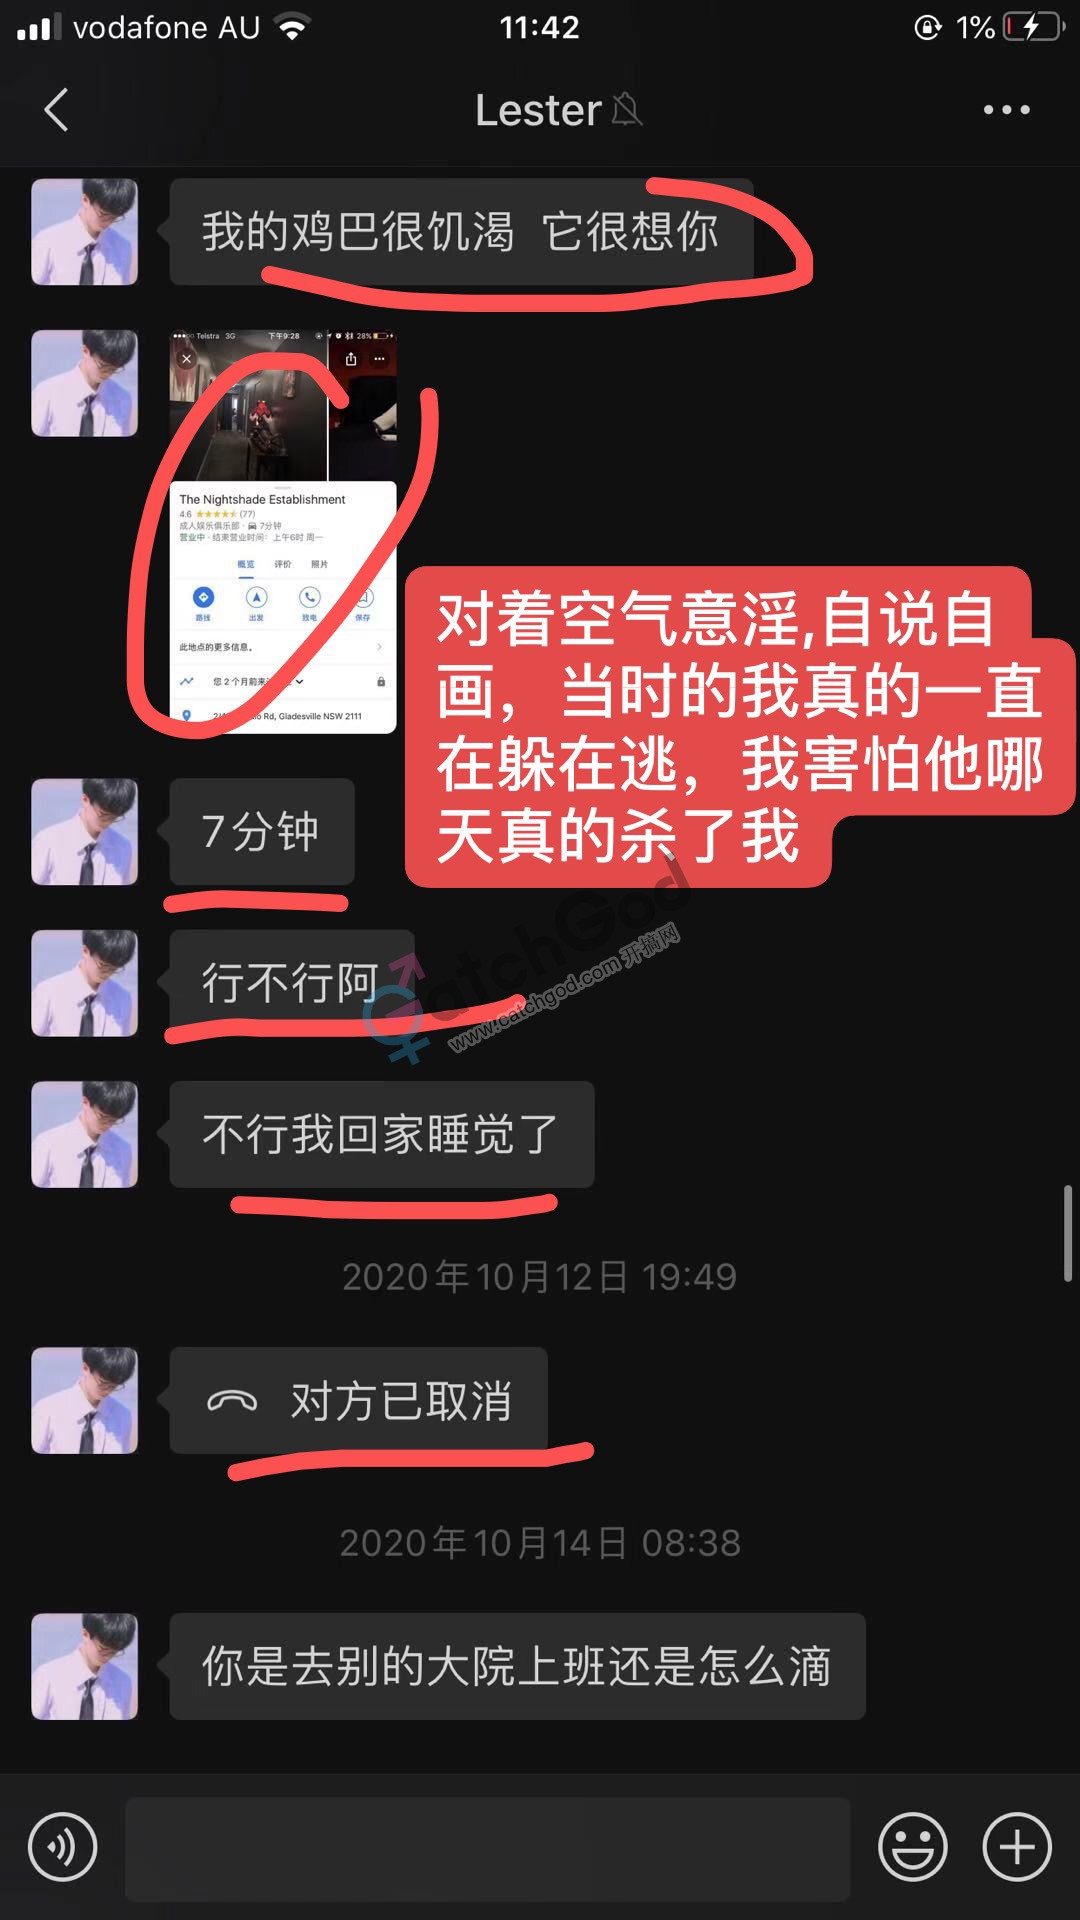 WeChat Image_20201123114652.jpg